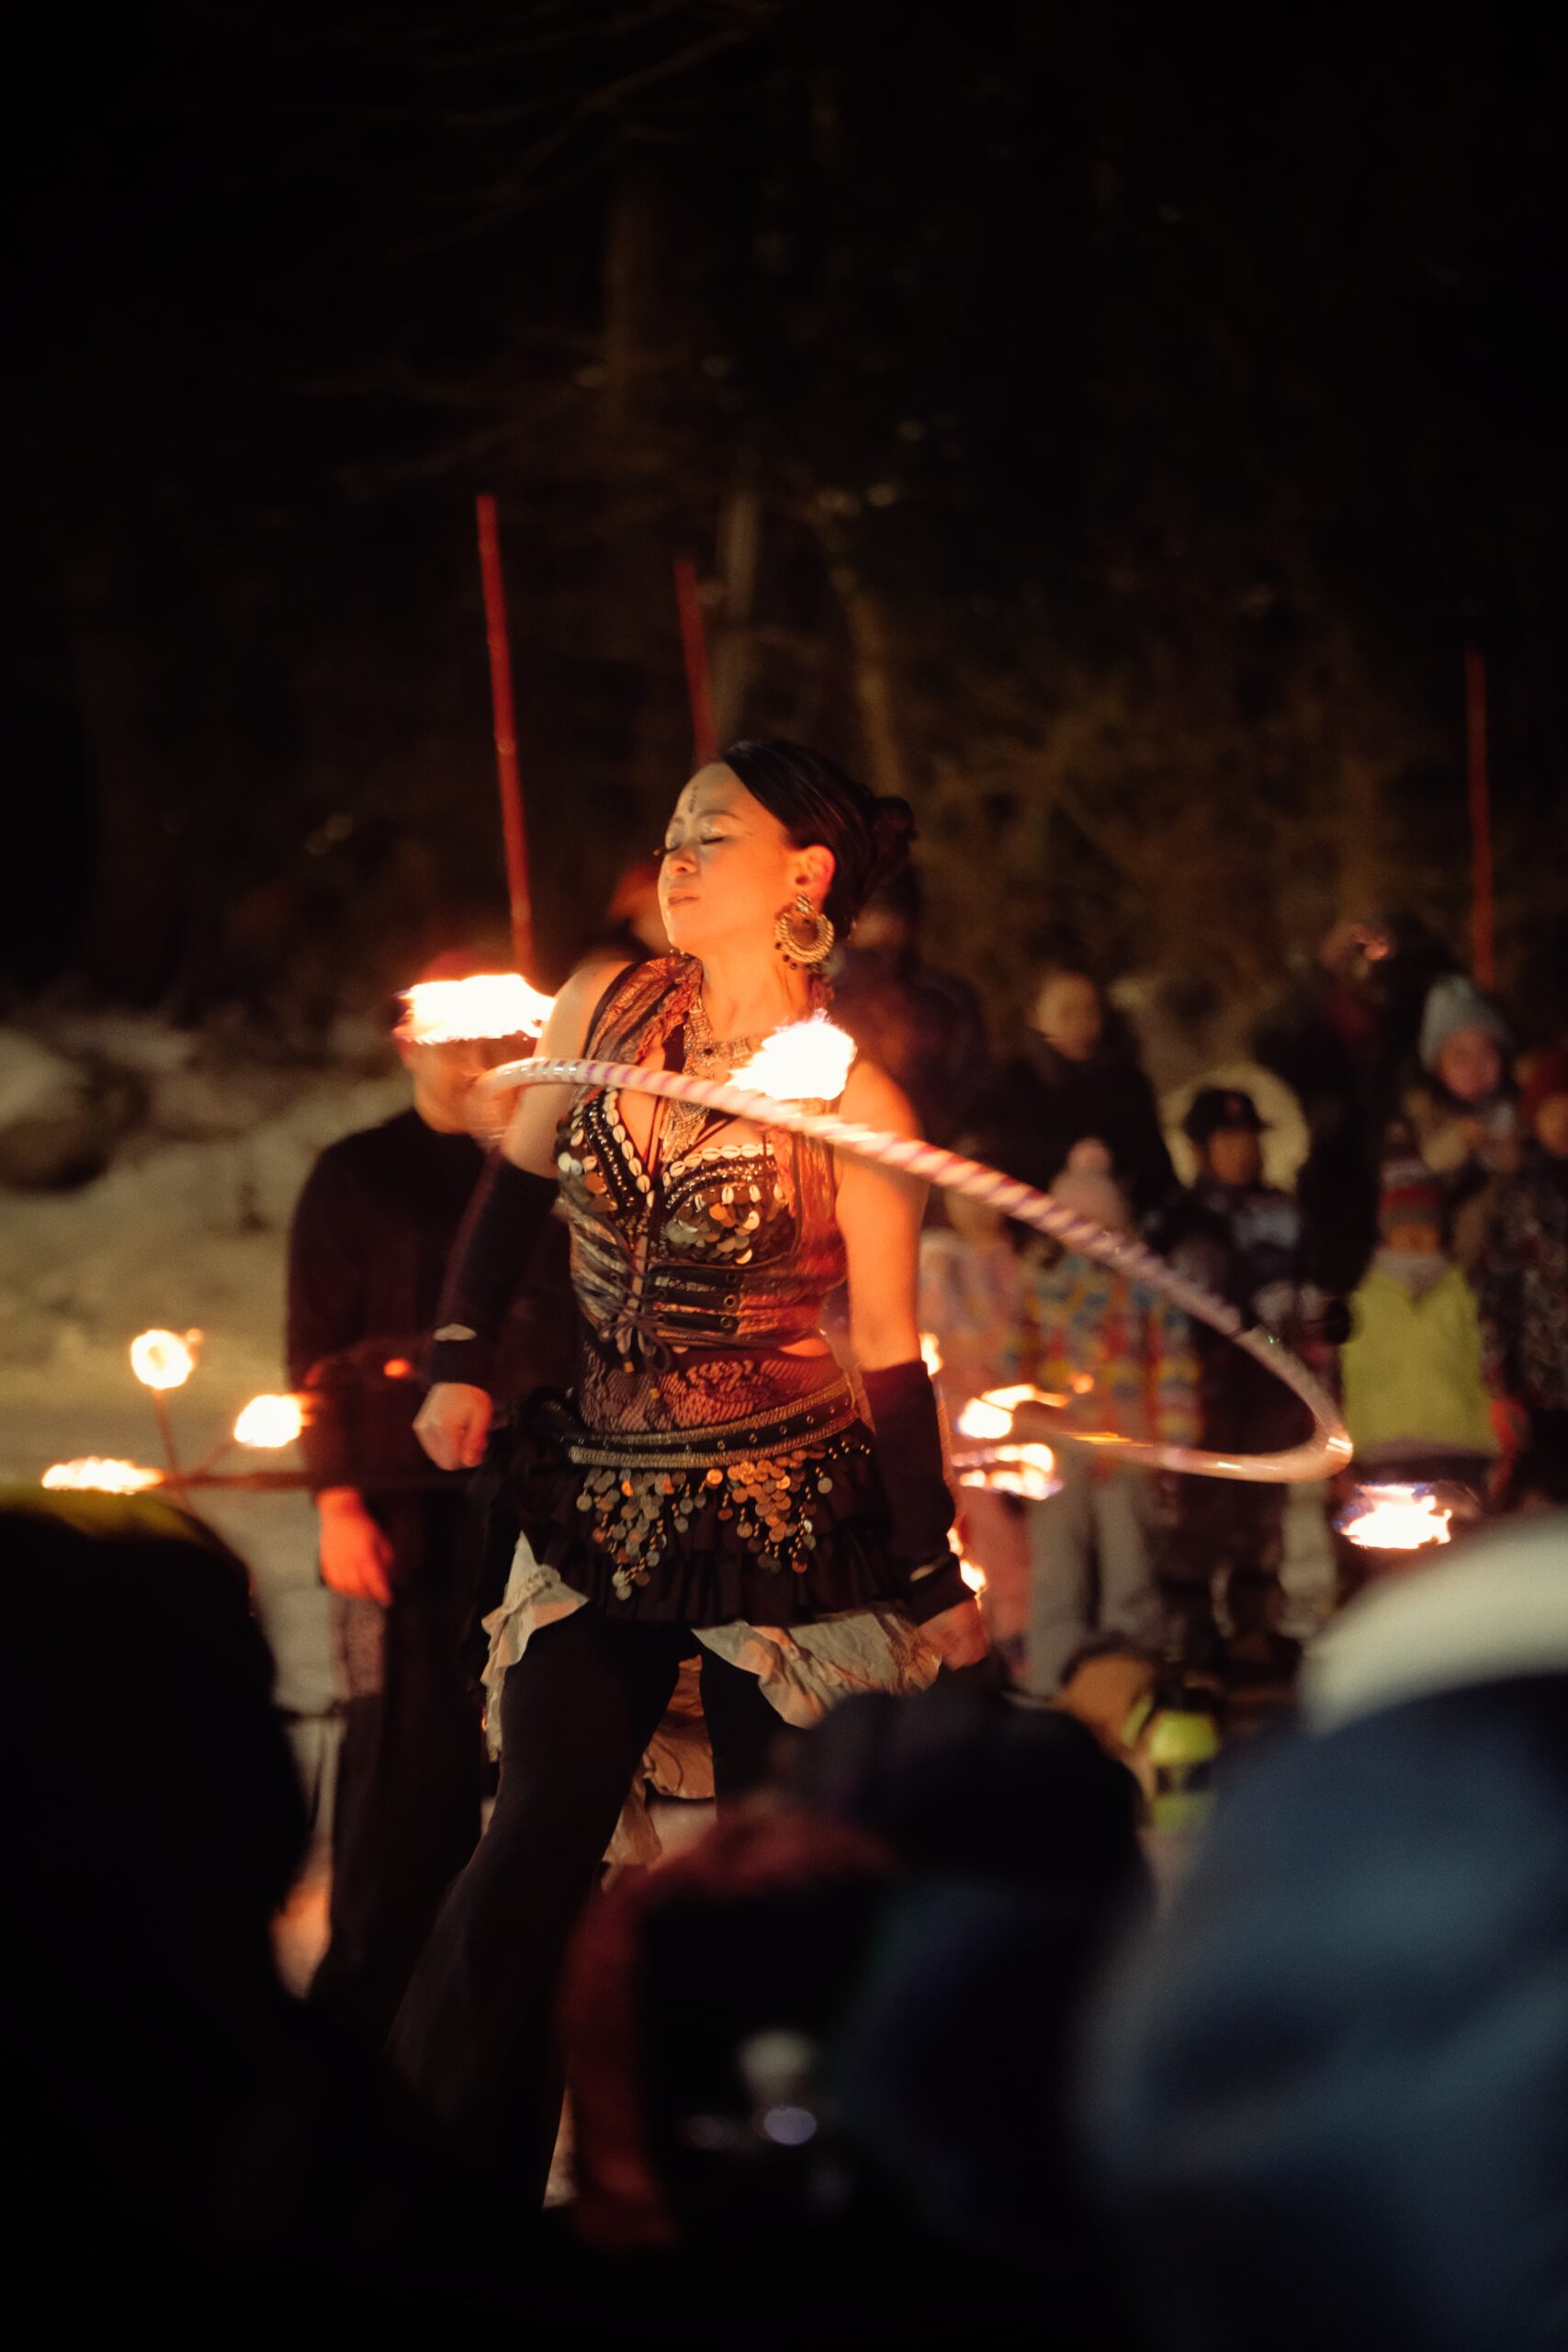 Fire twirler performance display at Nagasaka Station in Nozawa during Lantern Festival